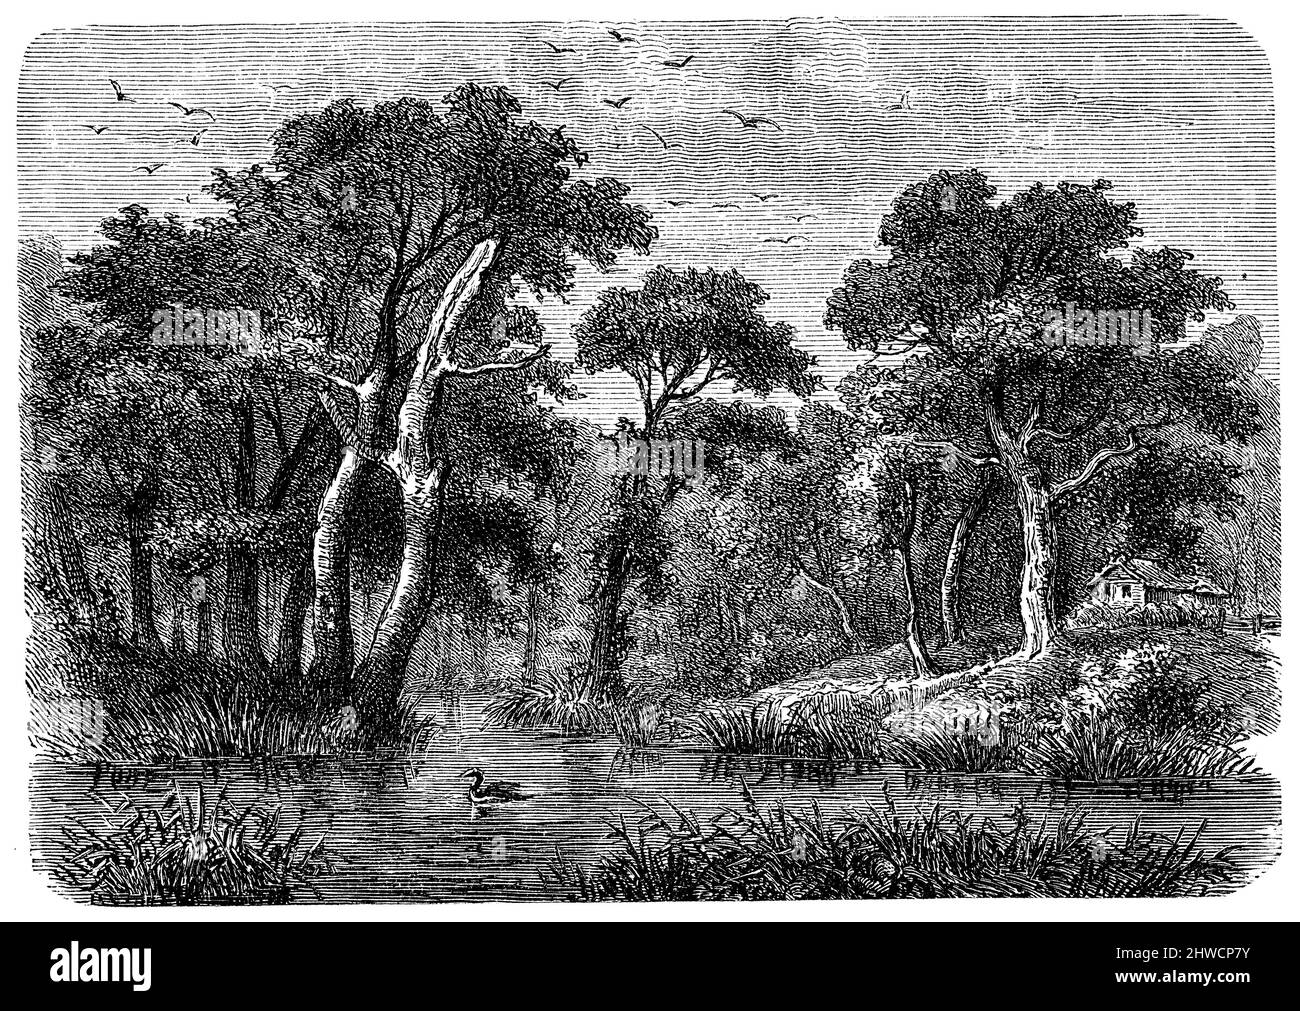 Forêt de Spree près de Burg, Allemagne, , (livre de géographie, 1885), Spreewald nahe Burg, Deutschland, forêt de la Spree, Allemagne Banque D'Images